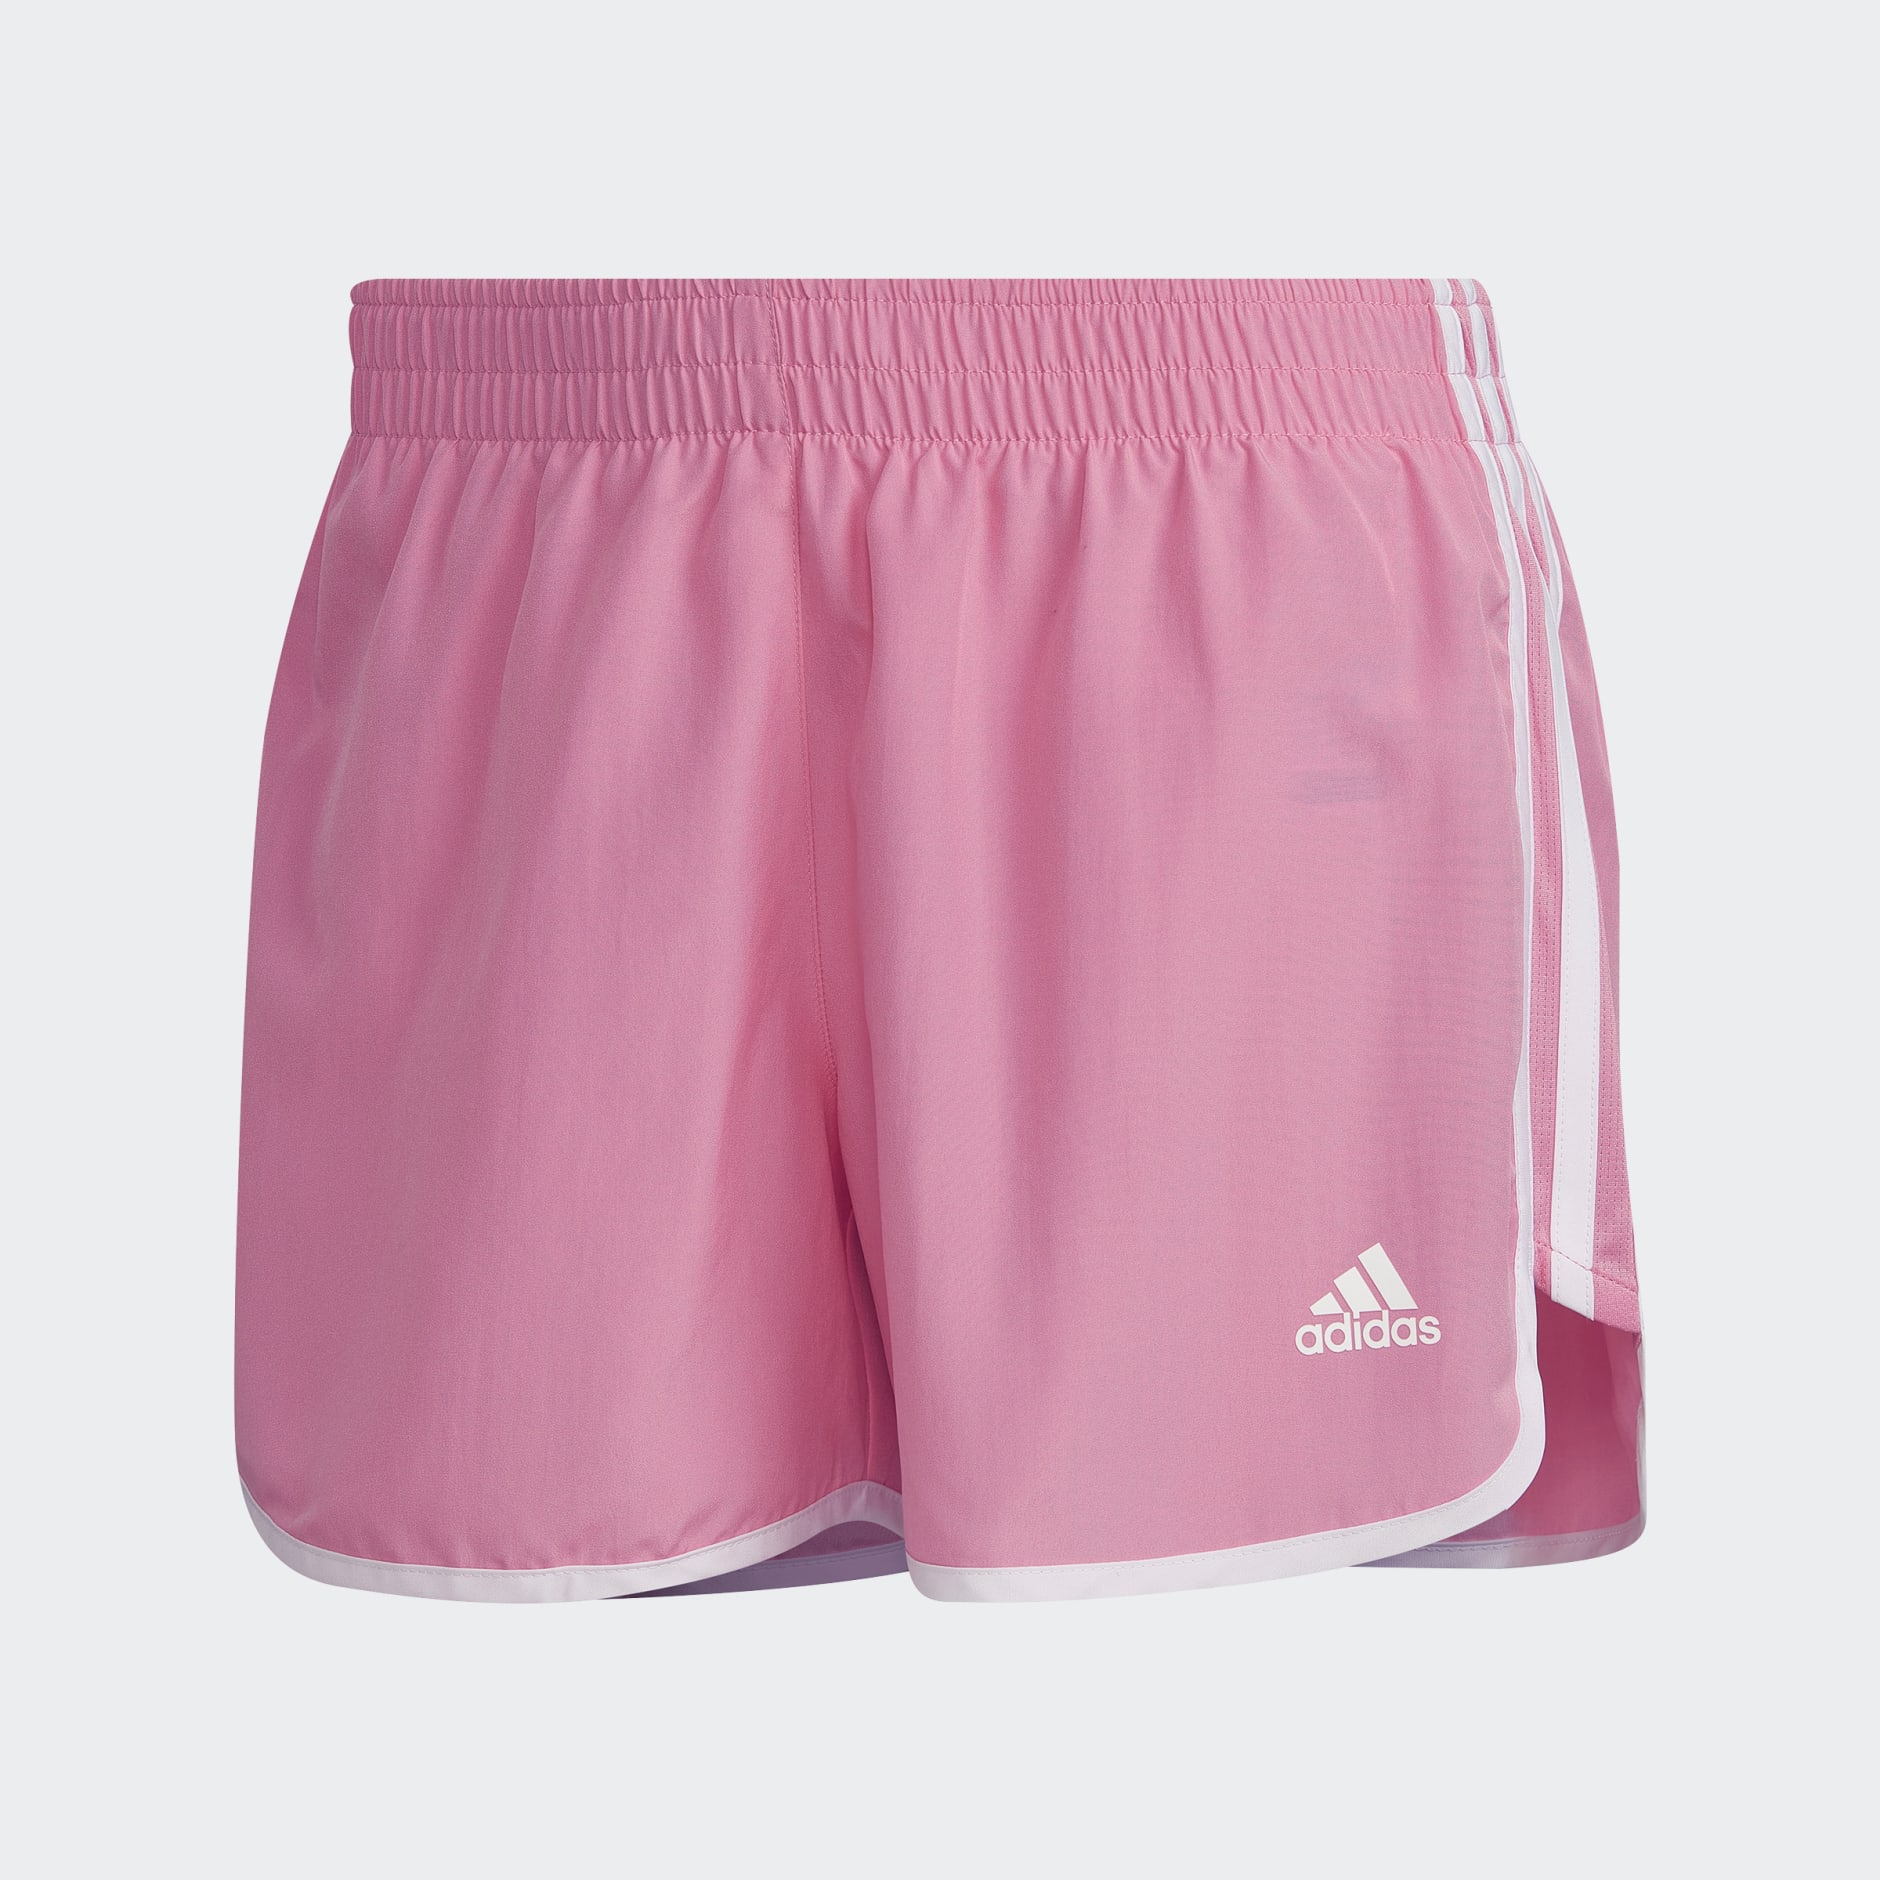 adidas Marathon 20 Shorts - Pink | adidas UAE